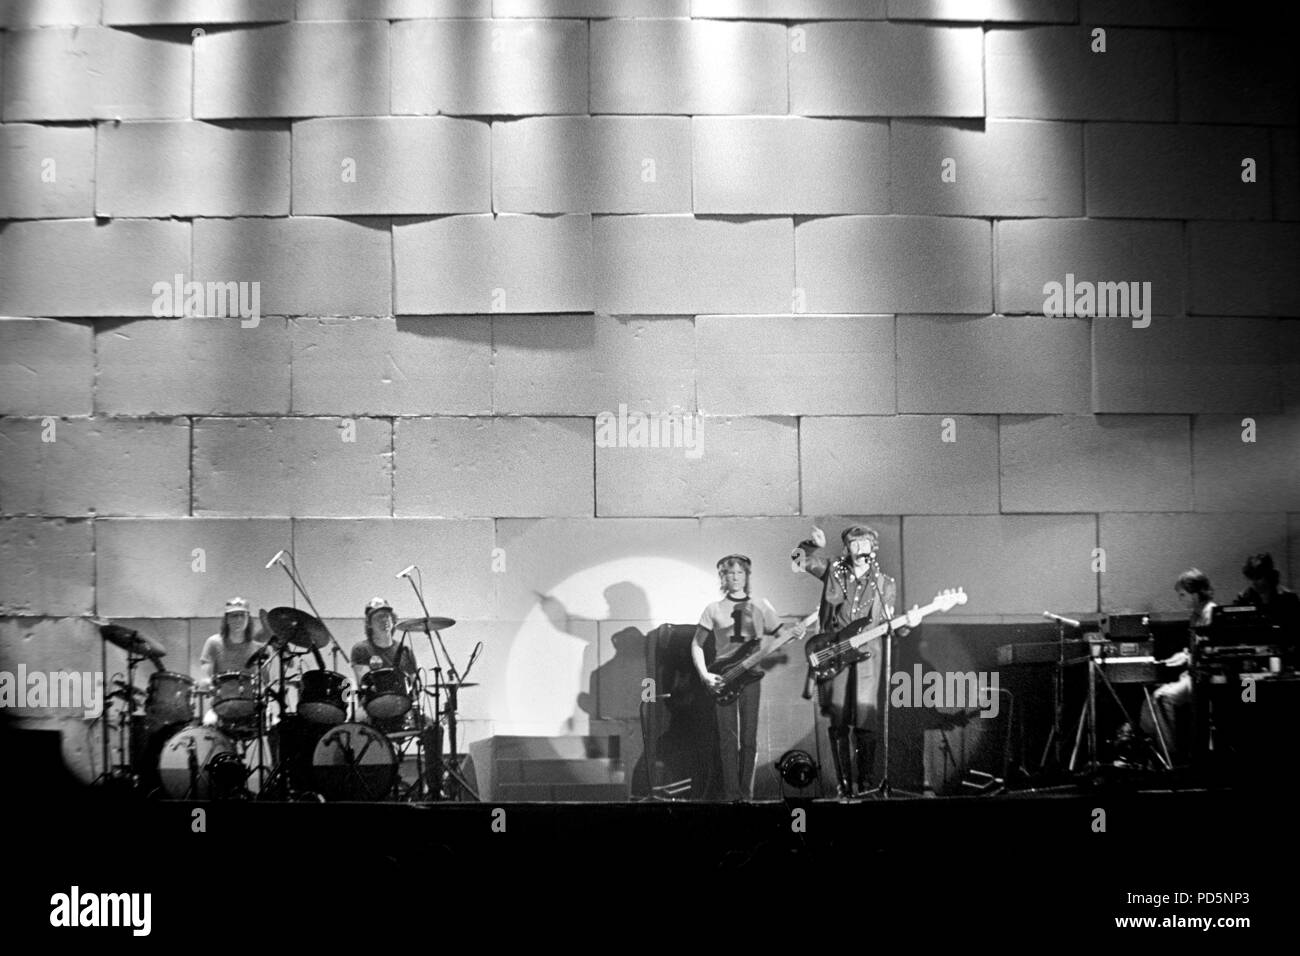 Dortmund, Allemagne, 20ème. 10 févr. 1981 - groupe de rock psychédélique britannique Pink Floyd effectuant le mur concert au Westfalenhalle à Dortmund/Allemagne (digital image à partir d'un b/w-film-négatif) Banque D'Images